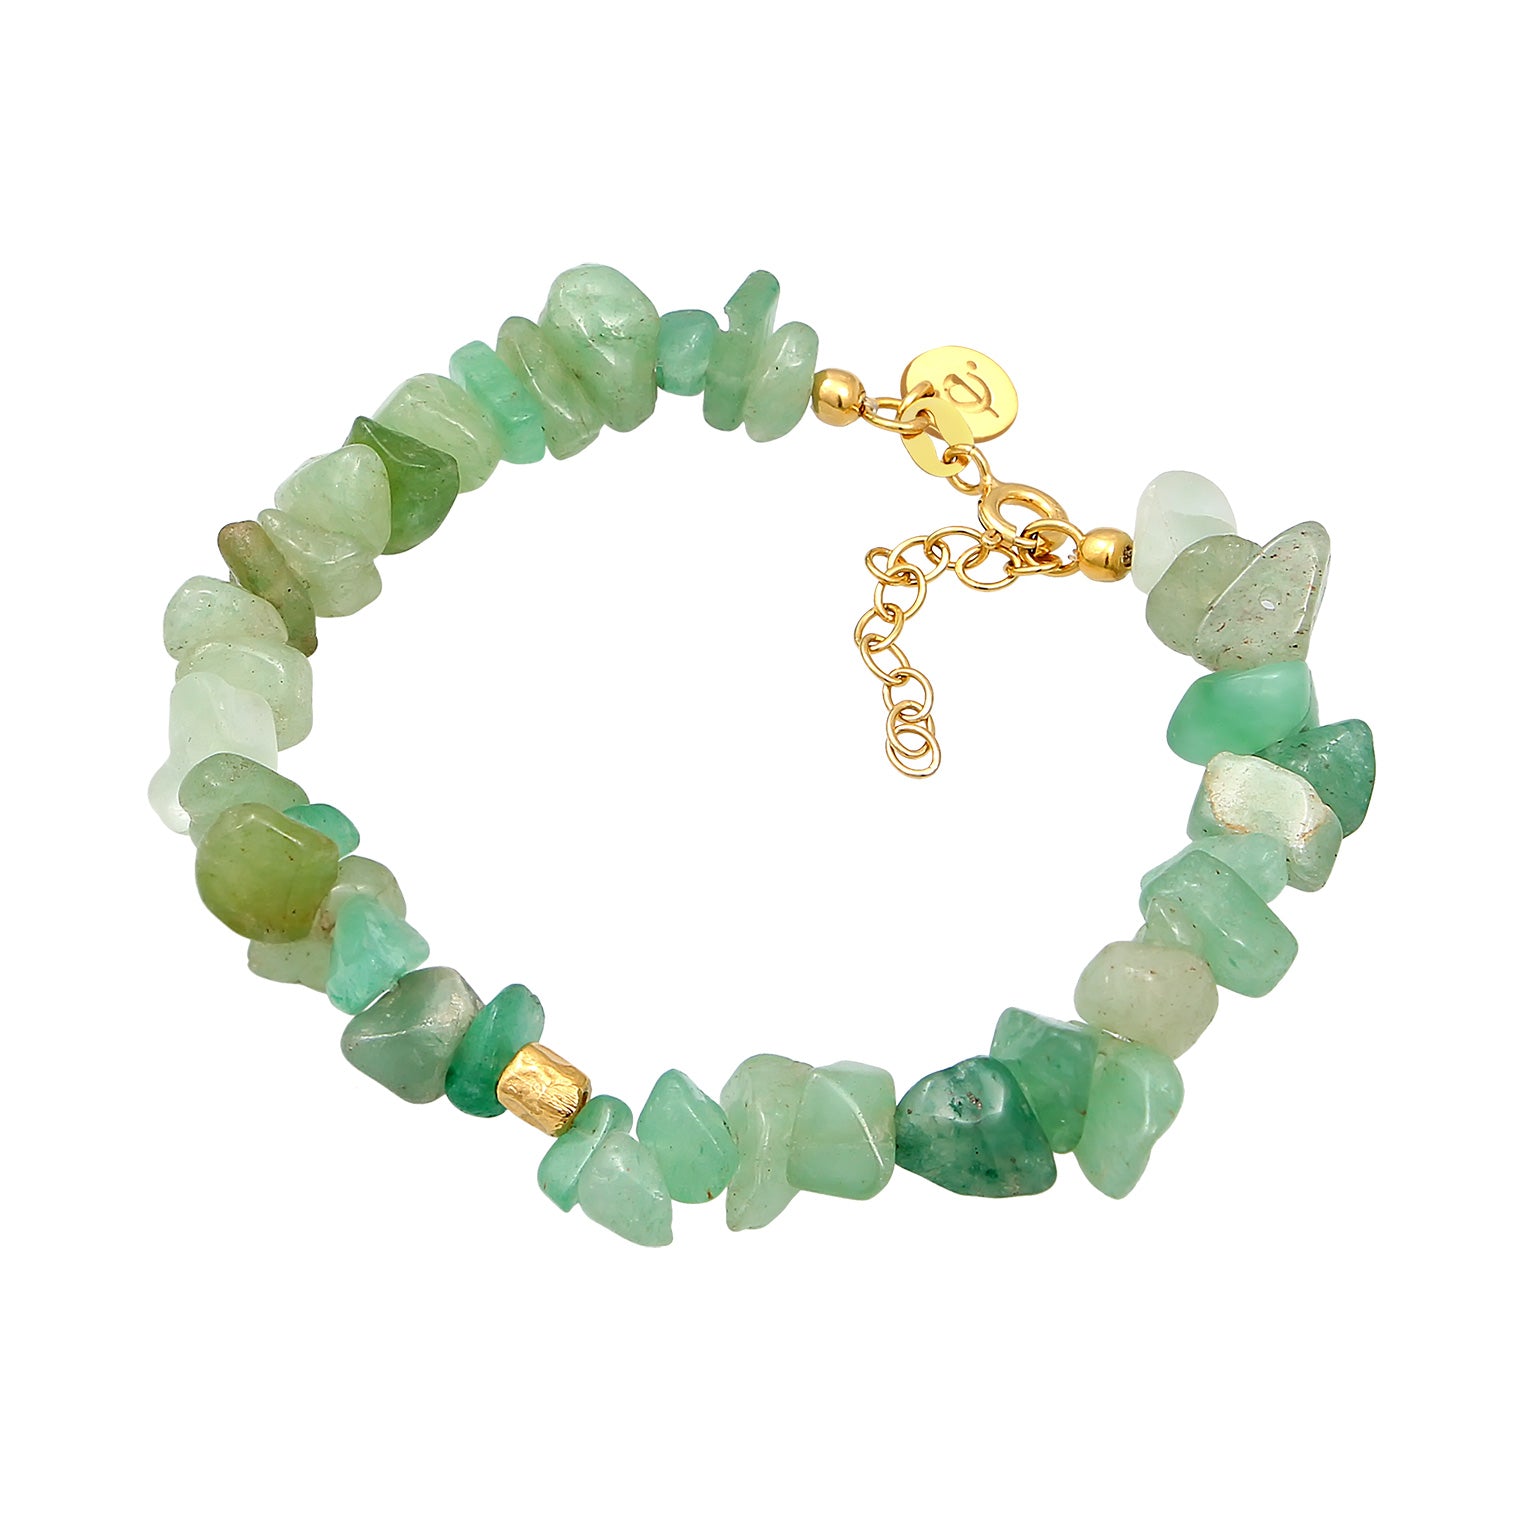 Buy bracelets in Elli's online shop – Elli Jewelry